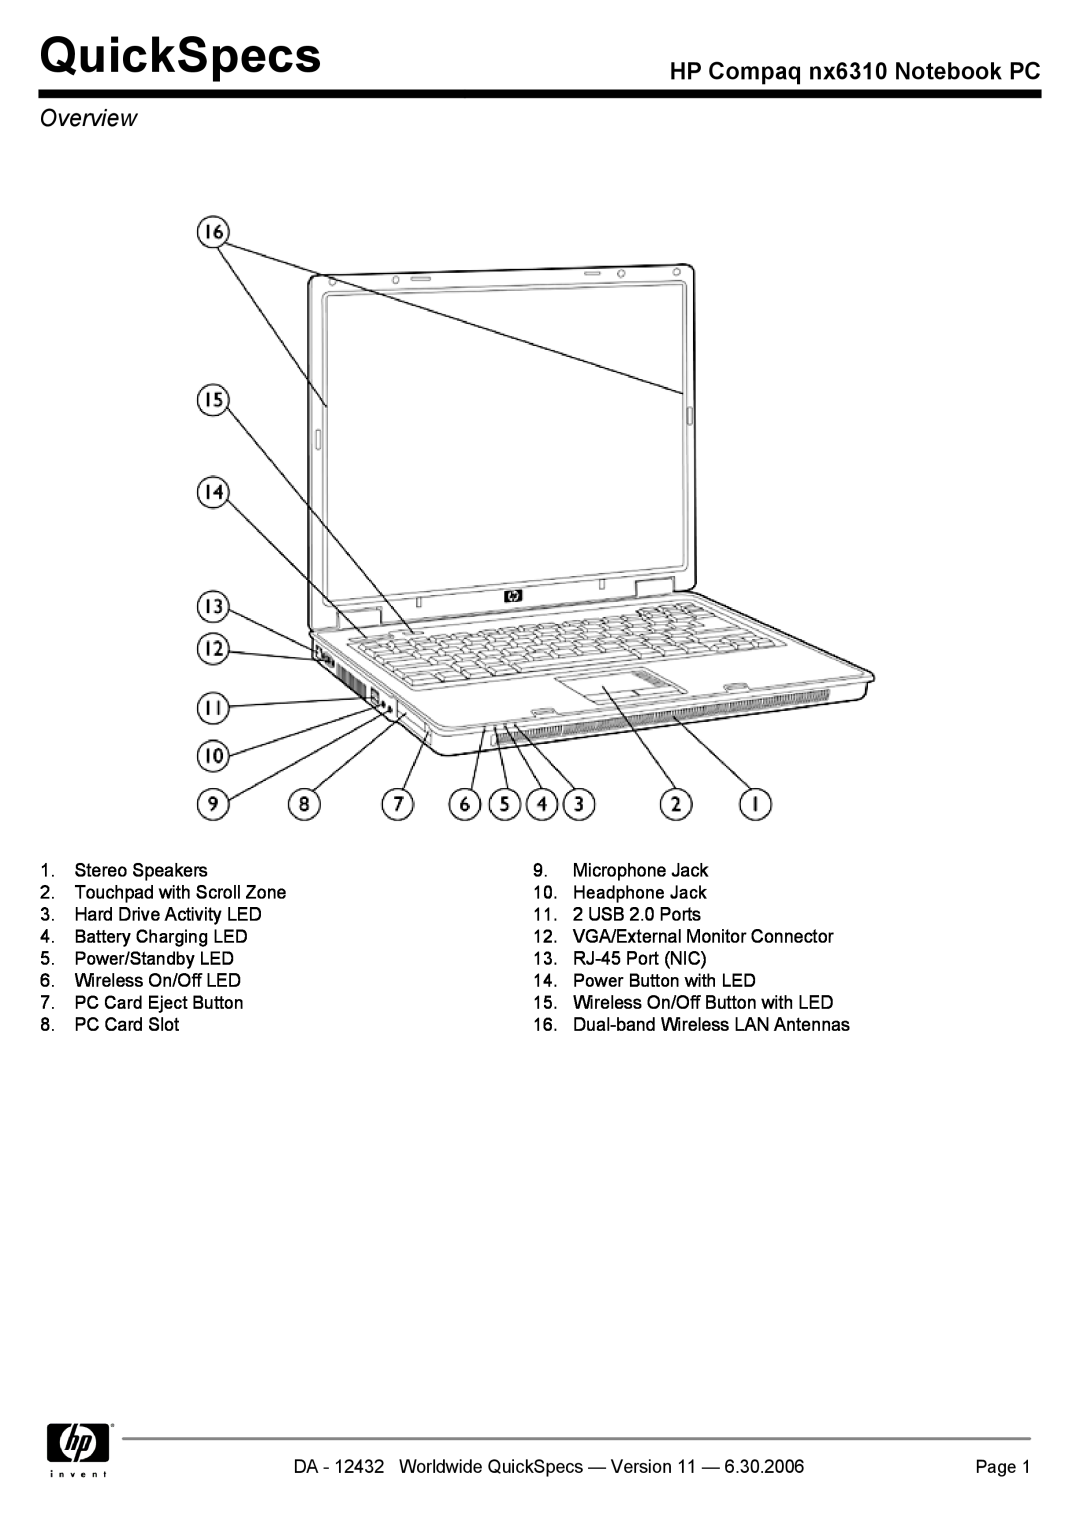 Compaq NX6310 manual QuickSpecs, HP Compaq nx6310 Notebook PC, Overview 